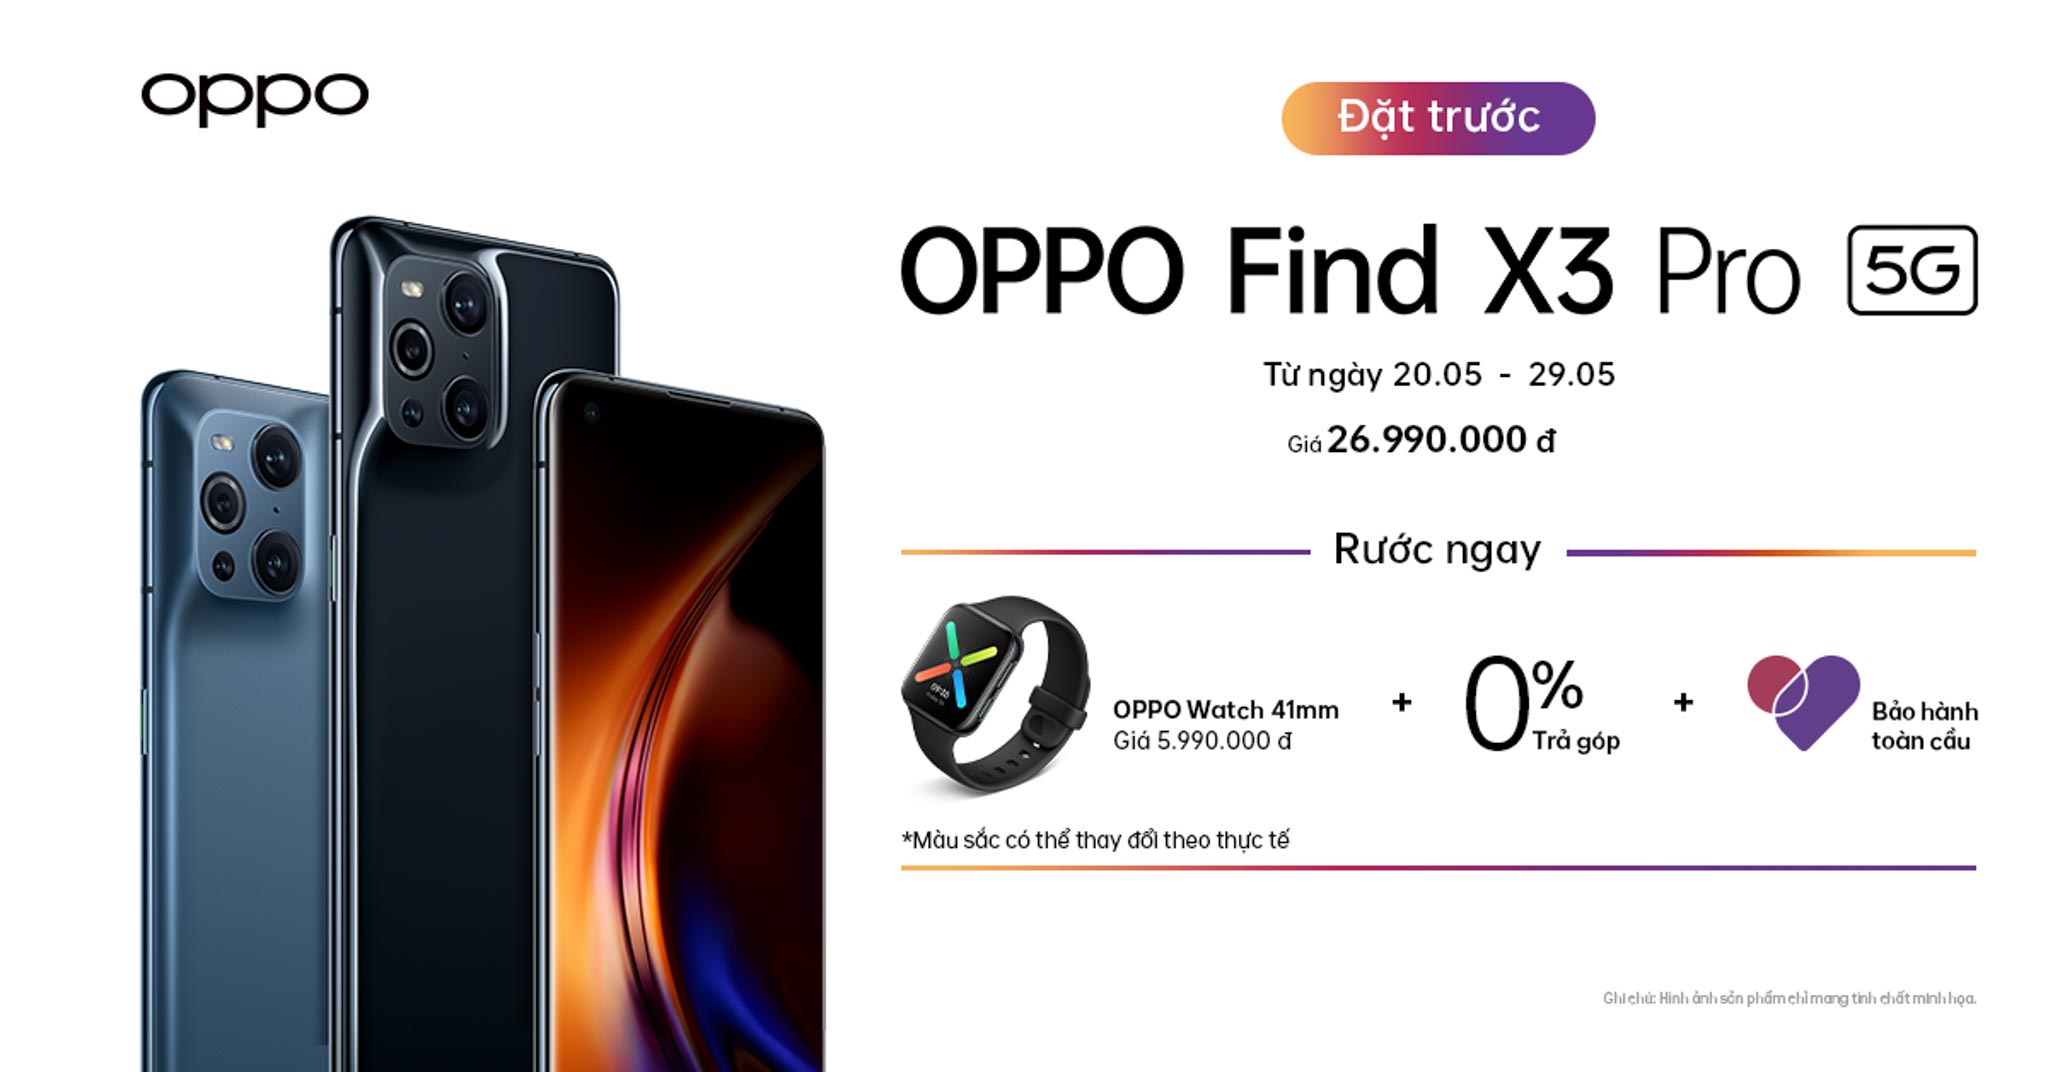 OPPO Find X3 Pro 5G chính thức ra mắt tại Việt Nam: Flagship đầu tiên sở hữu Hệ thống quản lý 1 tỷ màu toàn diện